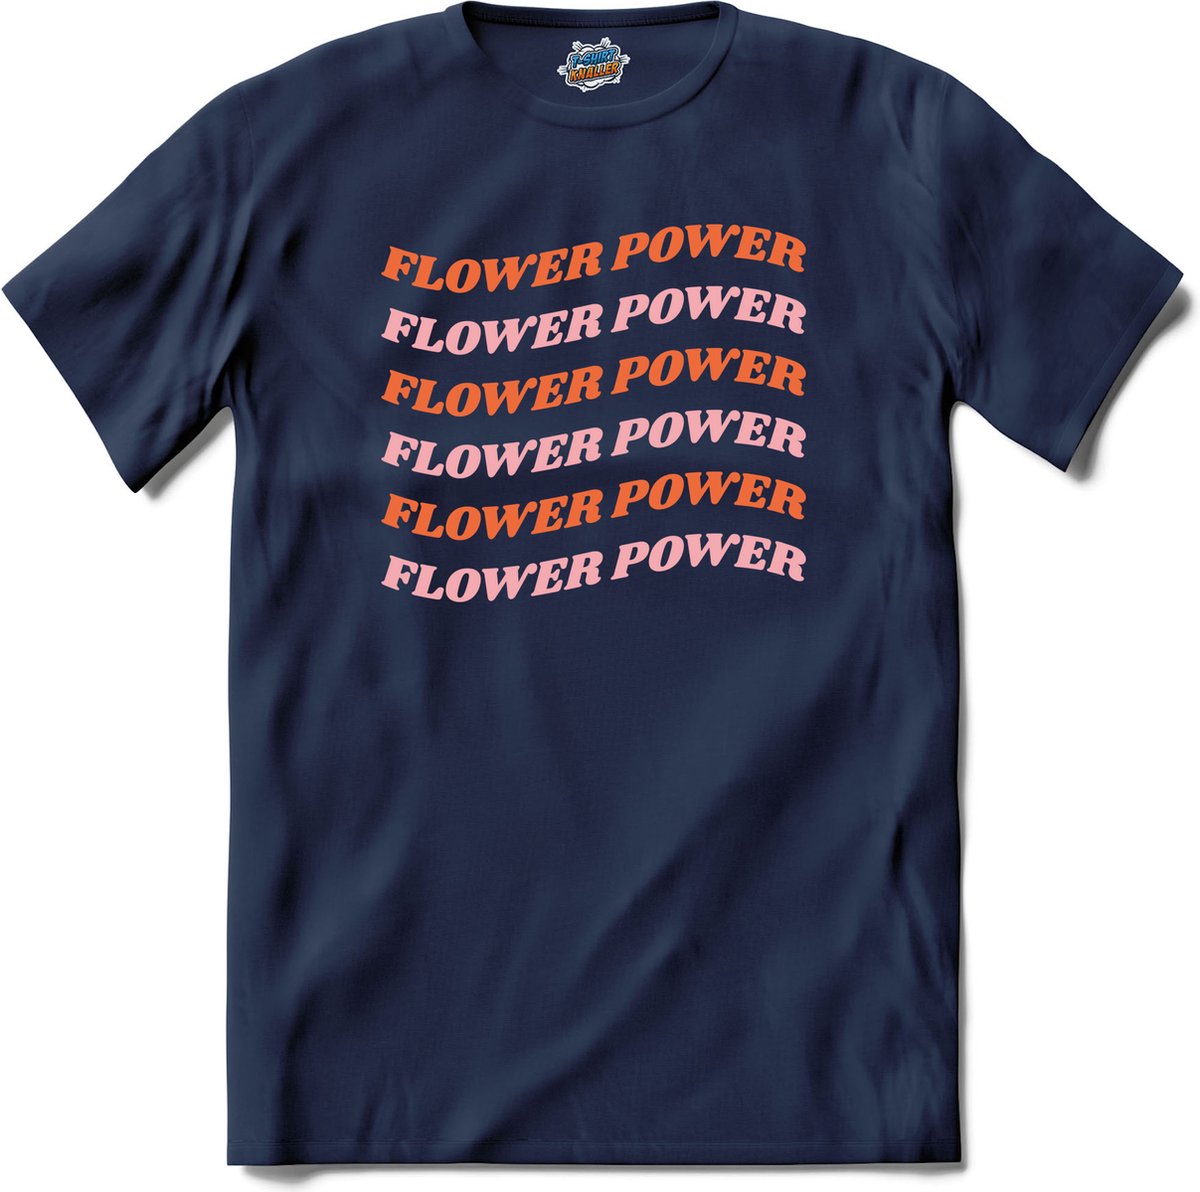 Flower power - T-Shirt - Heren - Navy Blue - Maat M